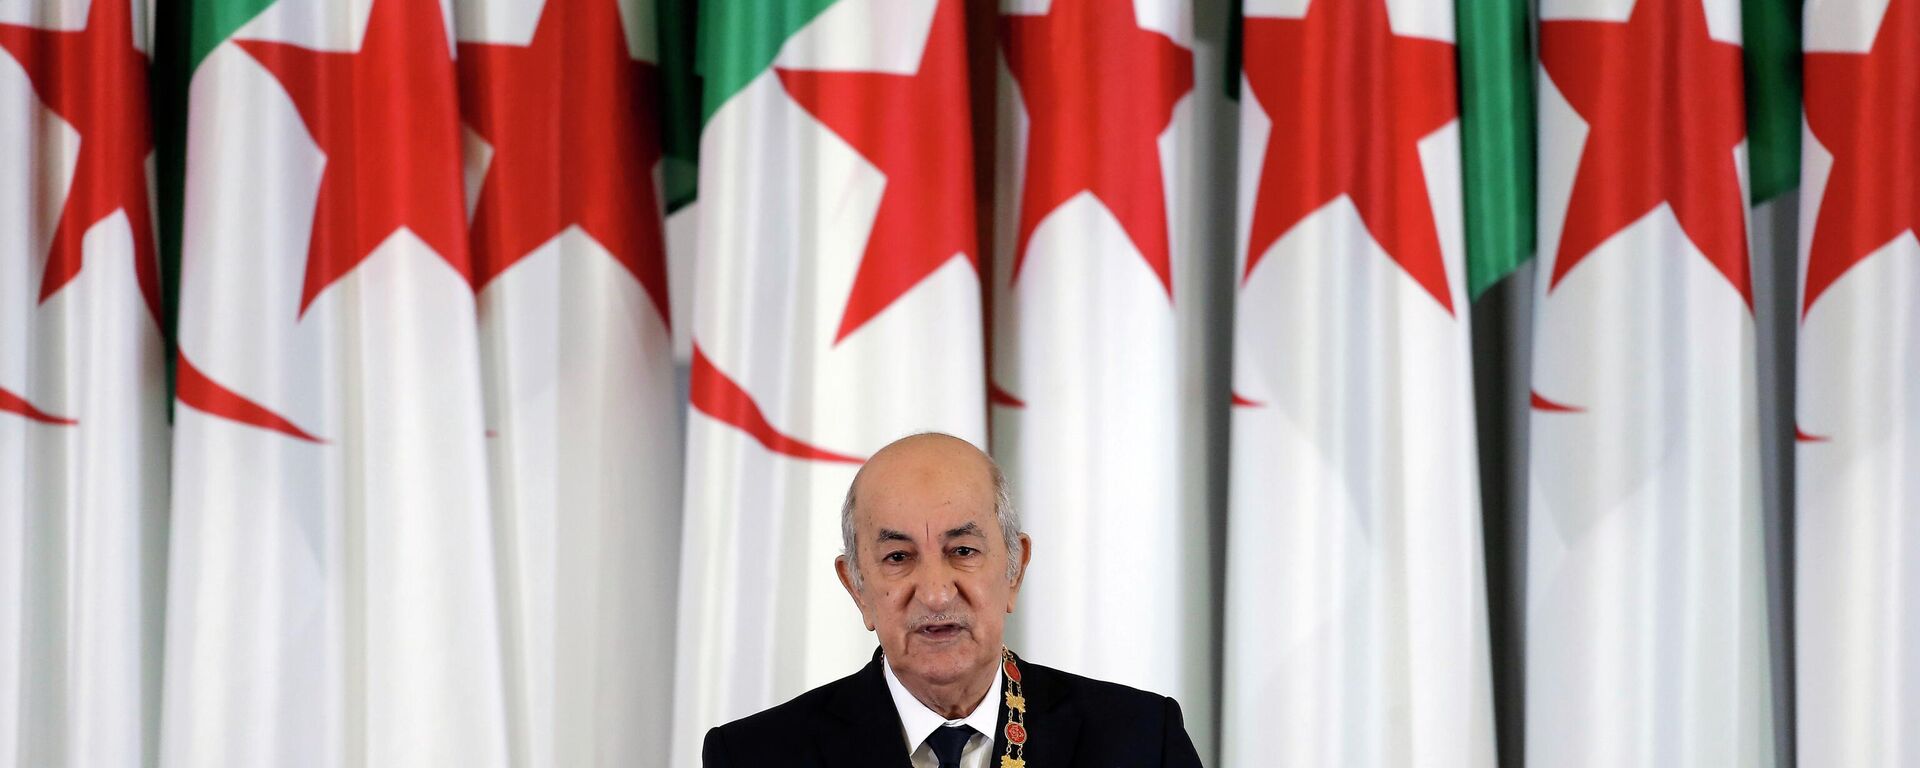 O presidente argelino, Abdelmadjid Tebboune, discursa durante cerimônia de posse no palácio presidencial, em Argel, na Argélia, em 19 de dezembro de 2019 - Sputnik Brasil, 1920, 22.12.2022